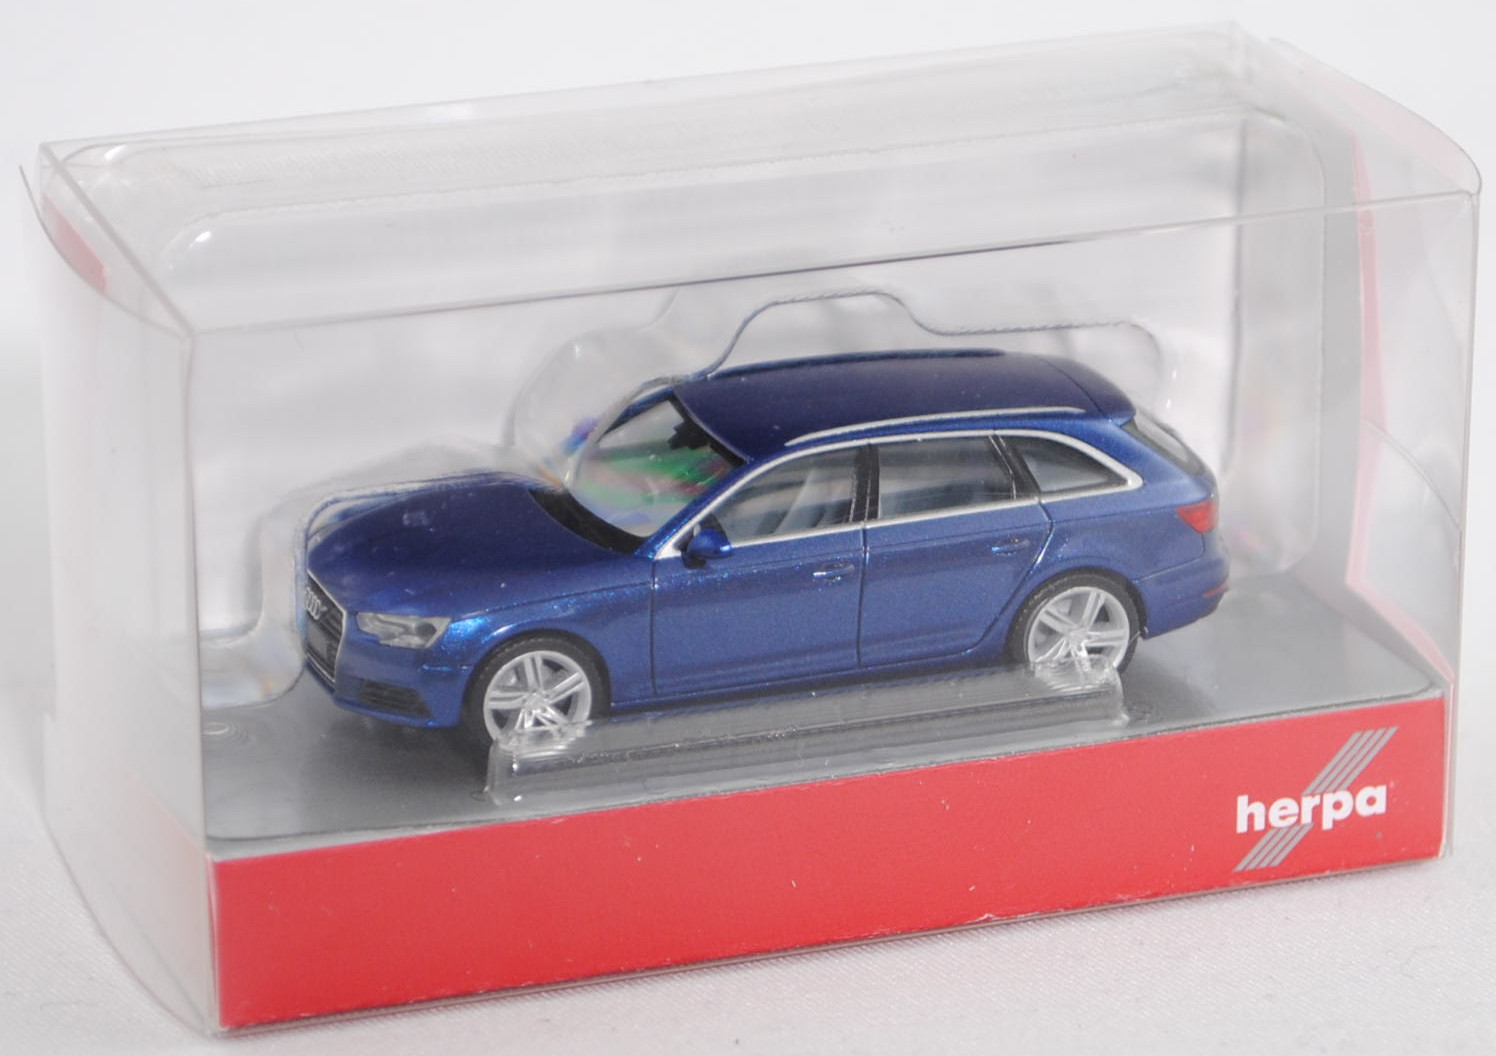 Audi A4 Avant, dunkelblau, 2015, Modellauto, Fertigmodell, I-Herpa 1:87